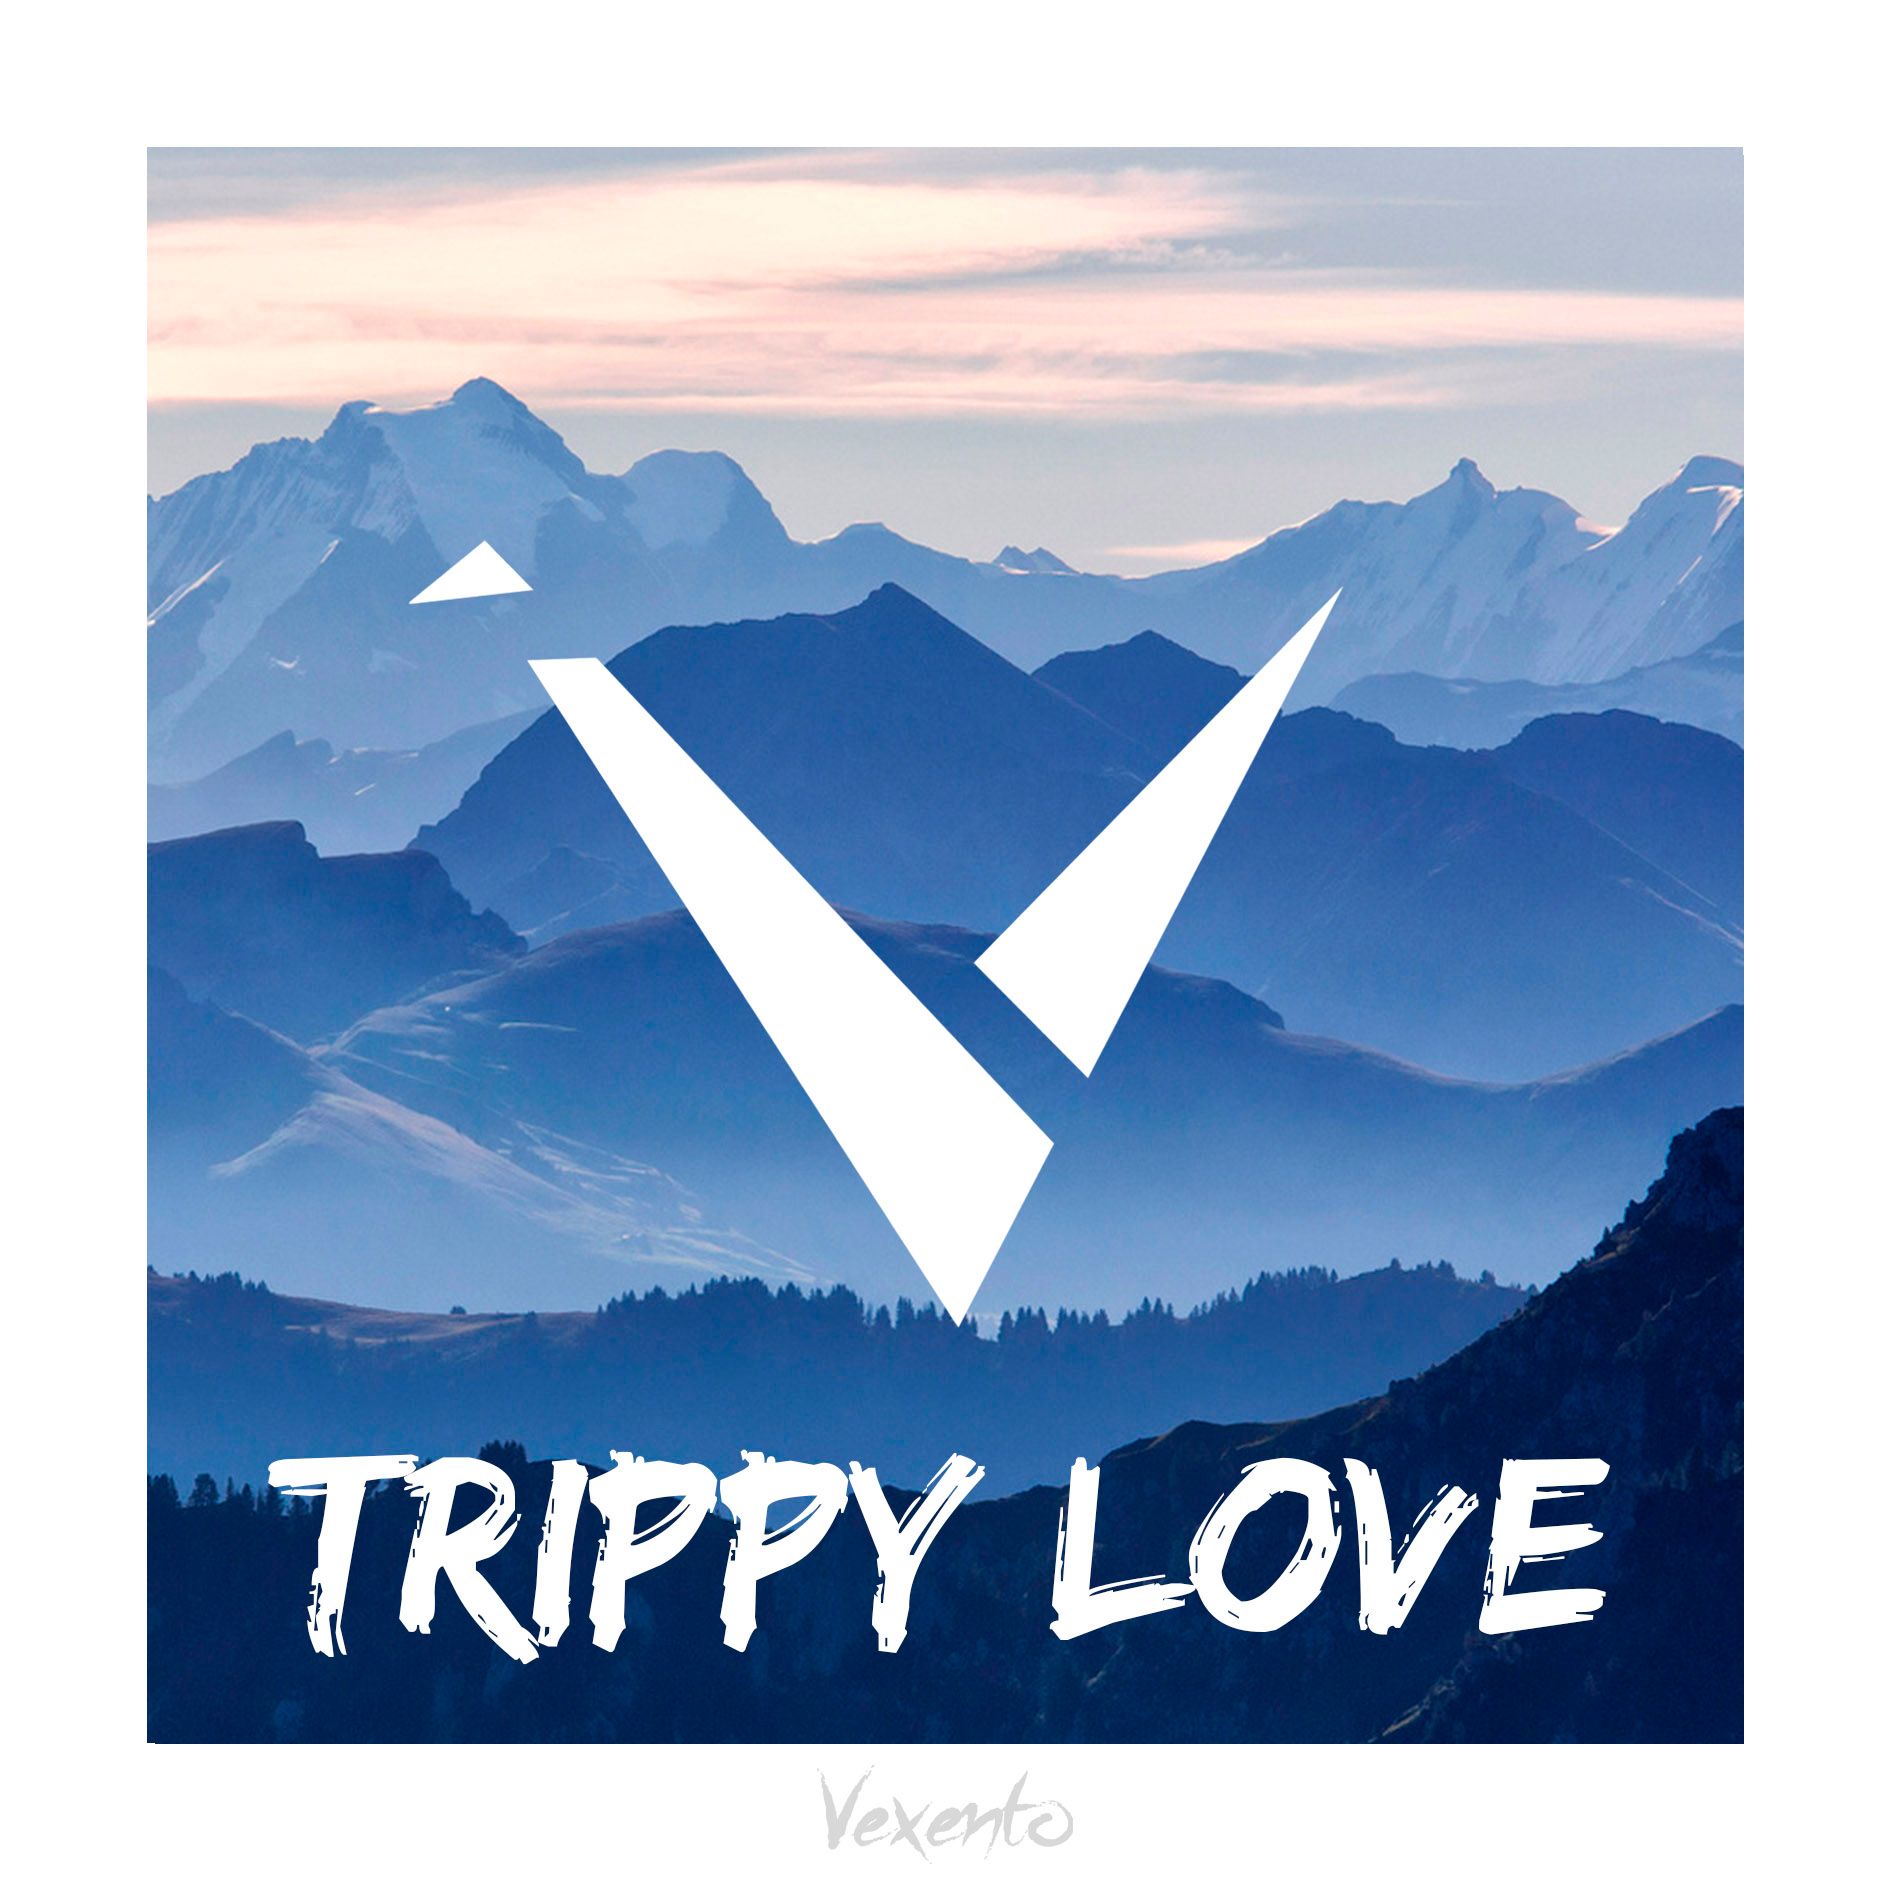 डाउनलोड Vexento - Trippy Love